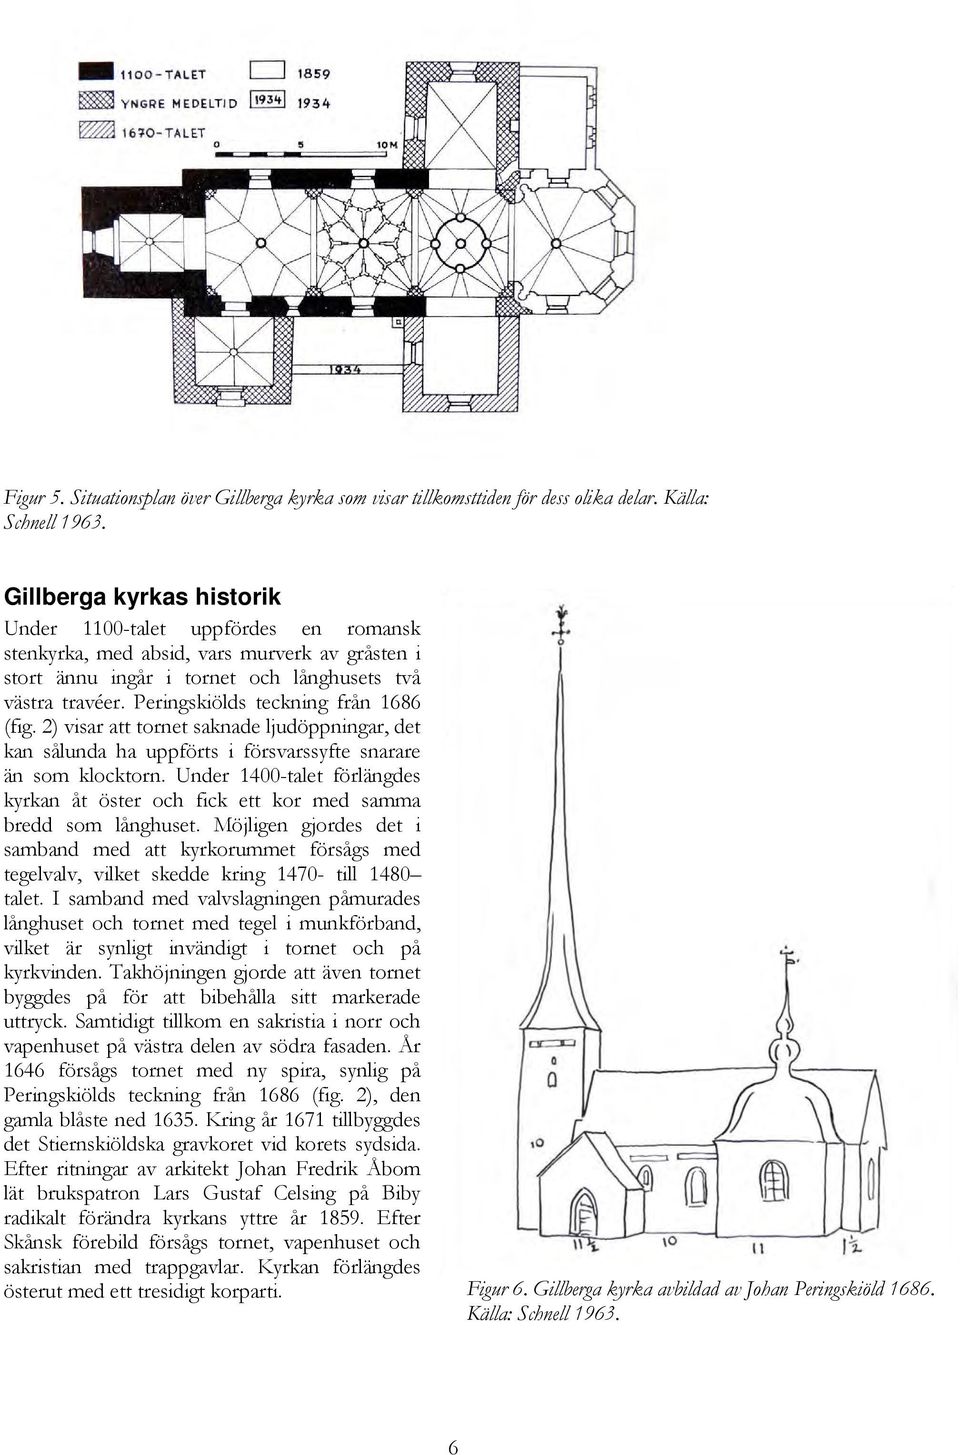 Peringskiölds teckning från 1686 (fig. 2) visar att tornet saknade ljudöppningar, det kan sålunda ha uppförts i försvarssyfte snarare än som klocktorn.